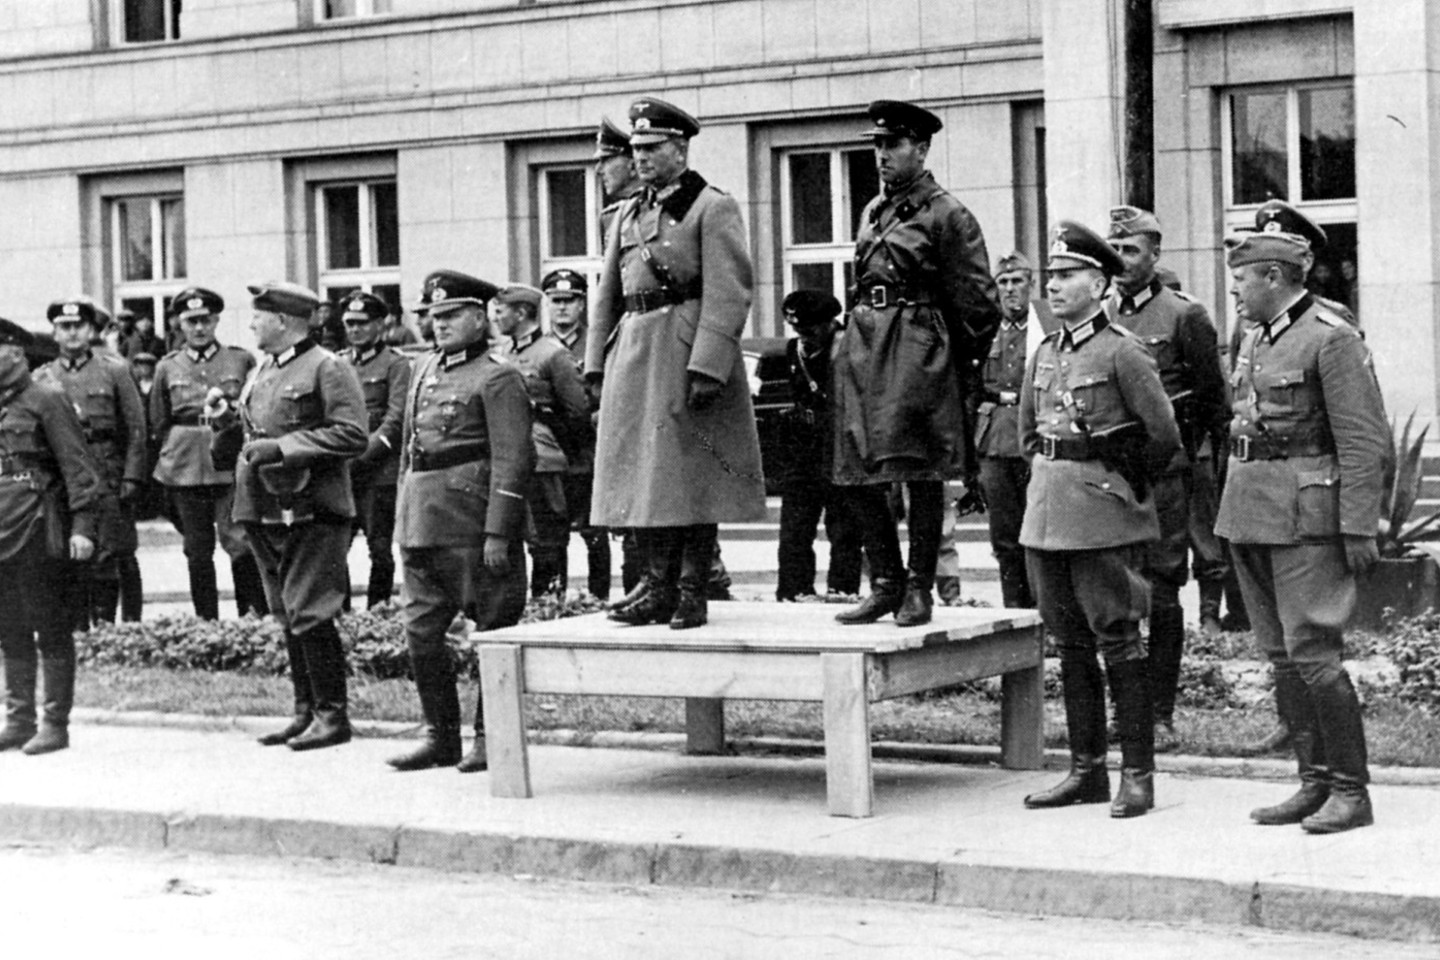 Sovietų ir vokiečių karininkai bendrame parade 1939 m. rugsėjo 22 d. Brest Litovske (Brastoje). Ant pakylos (iš kairės) generolas Wiktorinas, generolas H. Guderianas ir kombrigas (sovietų generolas leitenantas) S. Krivošejinas priima paradą.